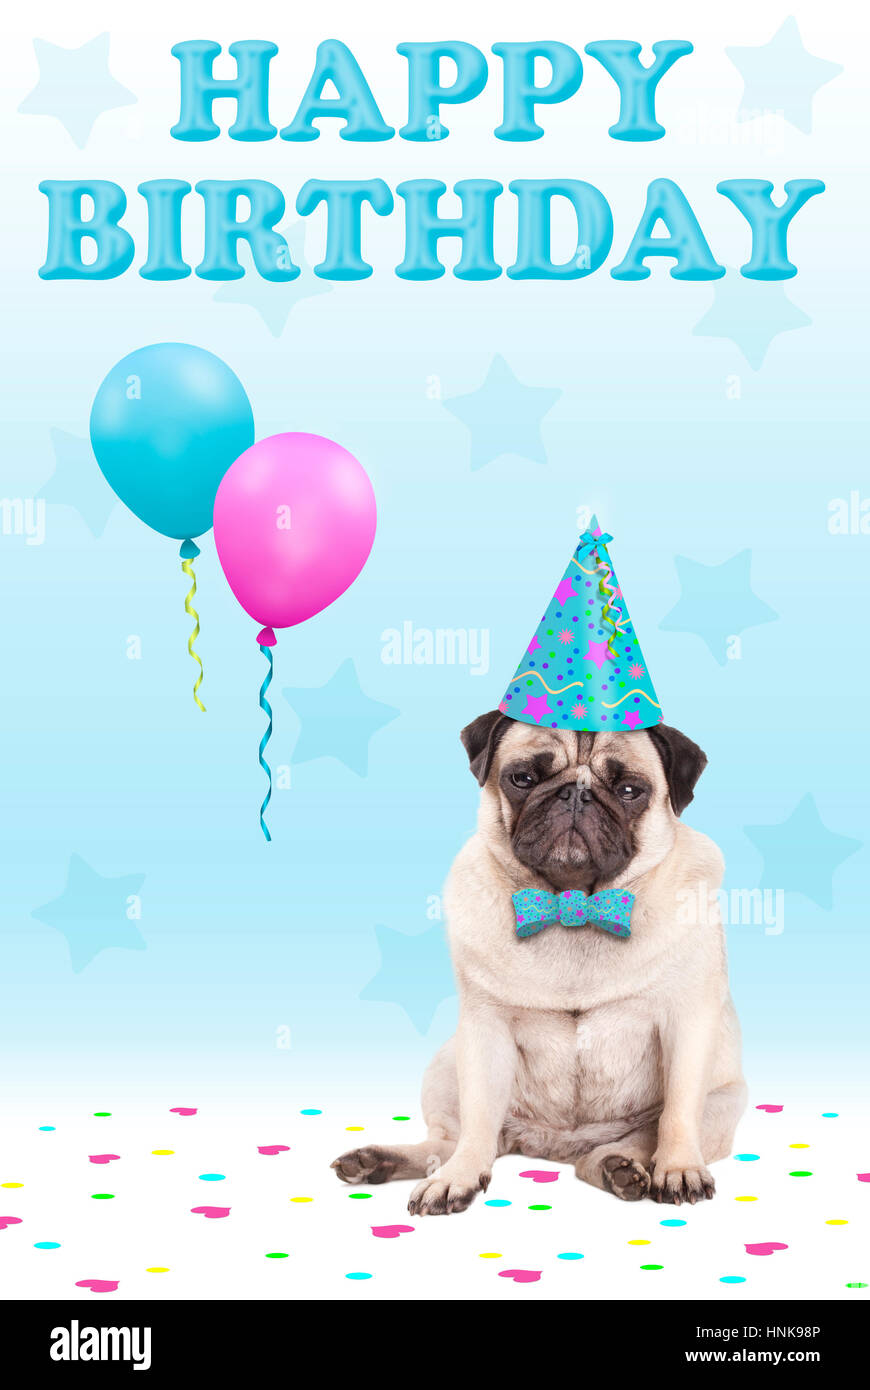 niedliche konfrontiert mürrisch Mops Welpen Hund mit Party Hut,  Luftballons, Konfetti und Text happy Birthday, auf blauem Hintergrund  Stockfotografie - Alamy